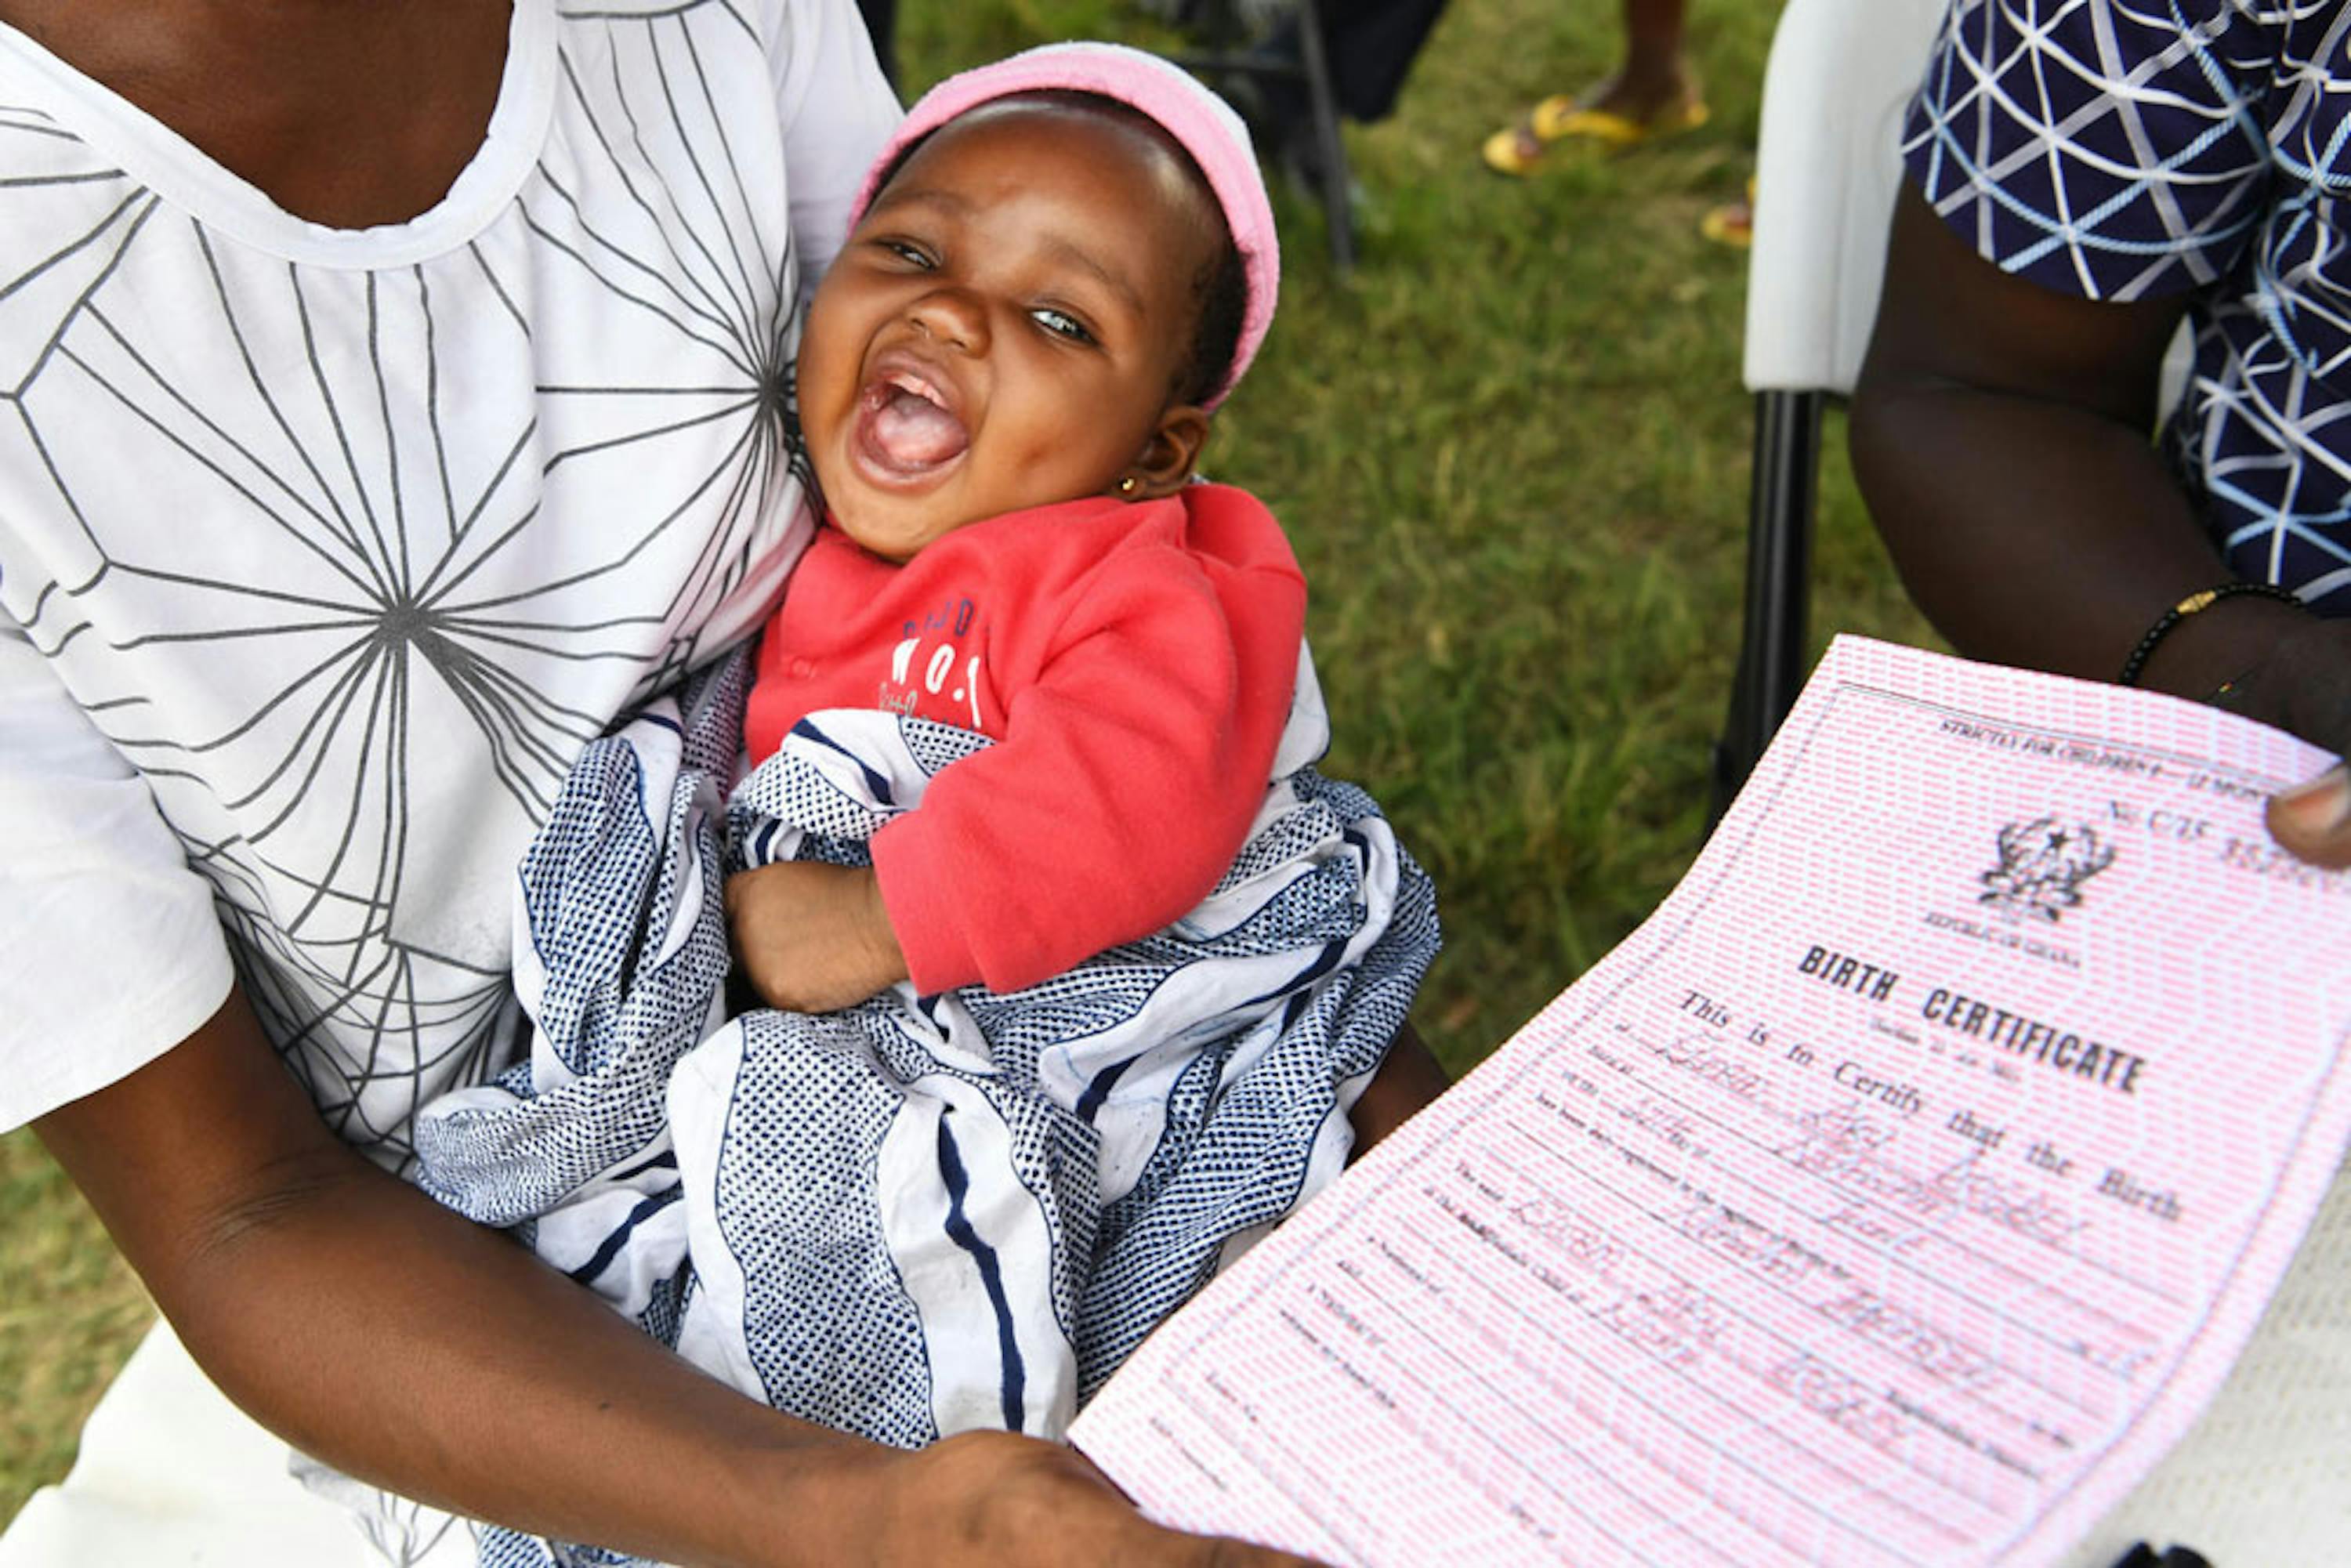 Elorm, 2 mesi, sembra felice del suo certificato di nascita nuovo di zecca... La regione a cui appartiene il suo paese (il Ghana) ha uno dei tassi di registrazione alla nascita più bassi al mondo: appena il 51% - ©UNICEF/UN0268749/Dejongh